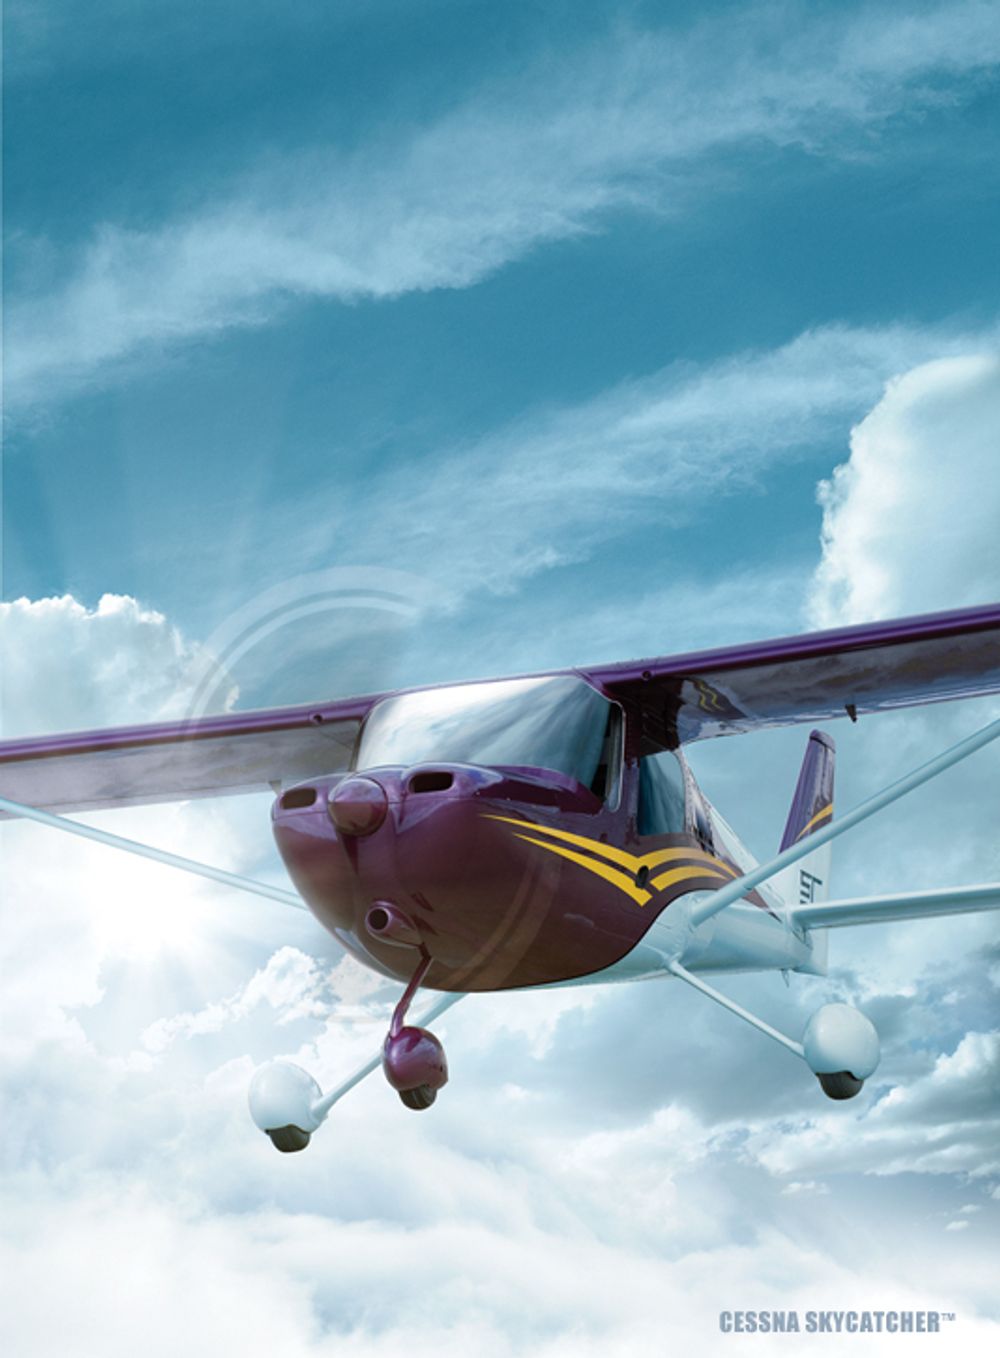 Cessna 162 Skycather skal i produseres i sin helhet i Kina.